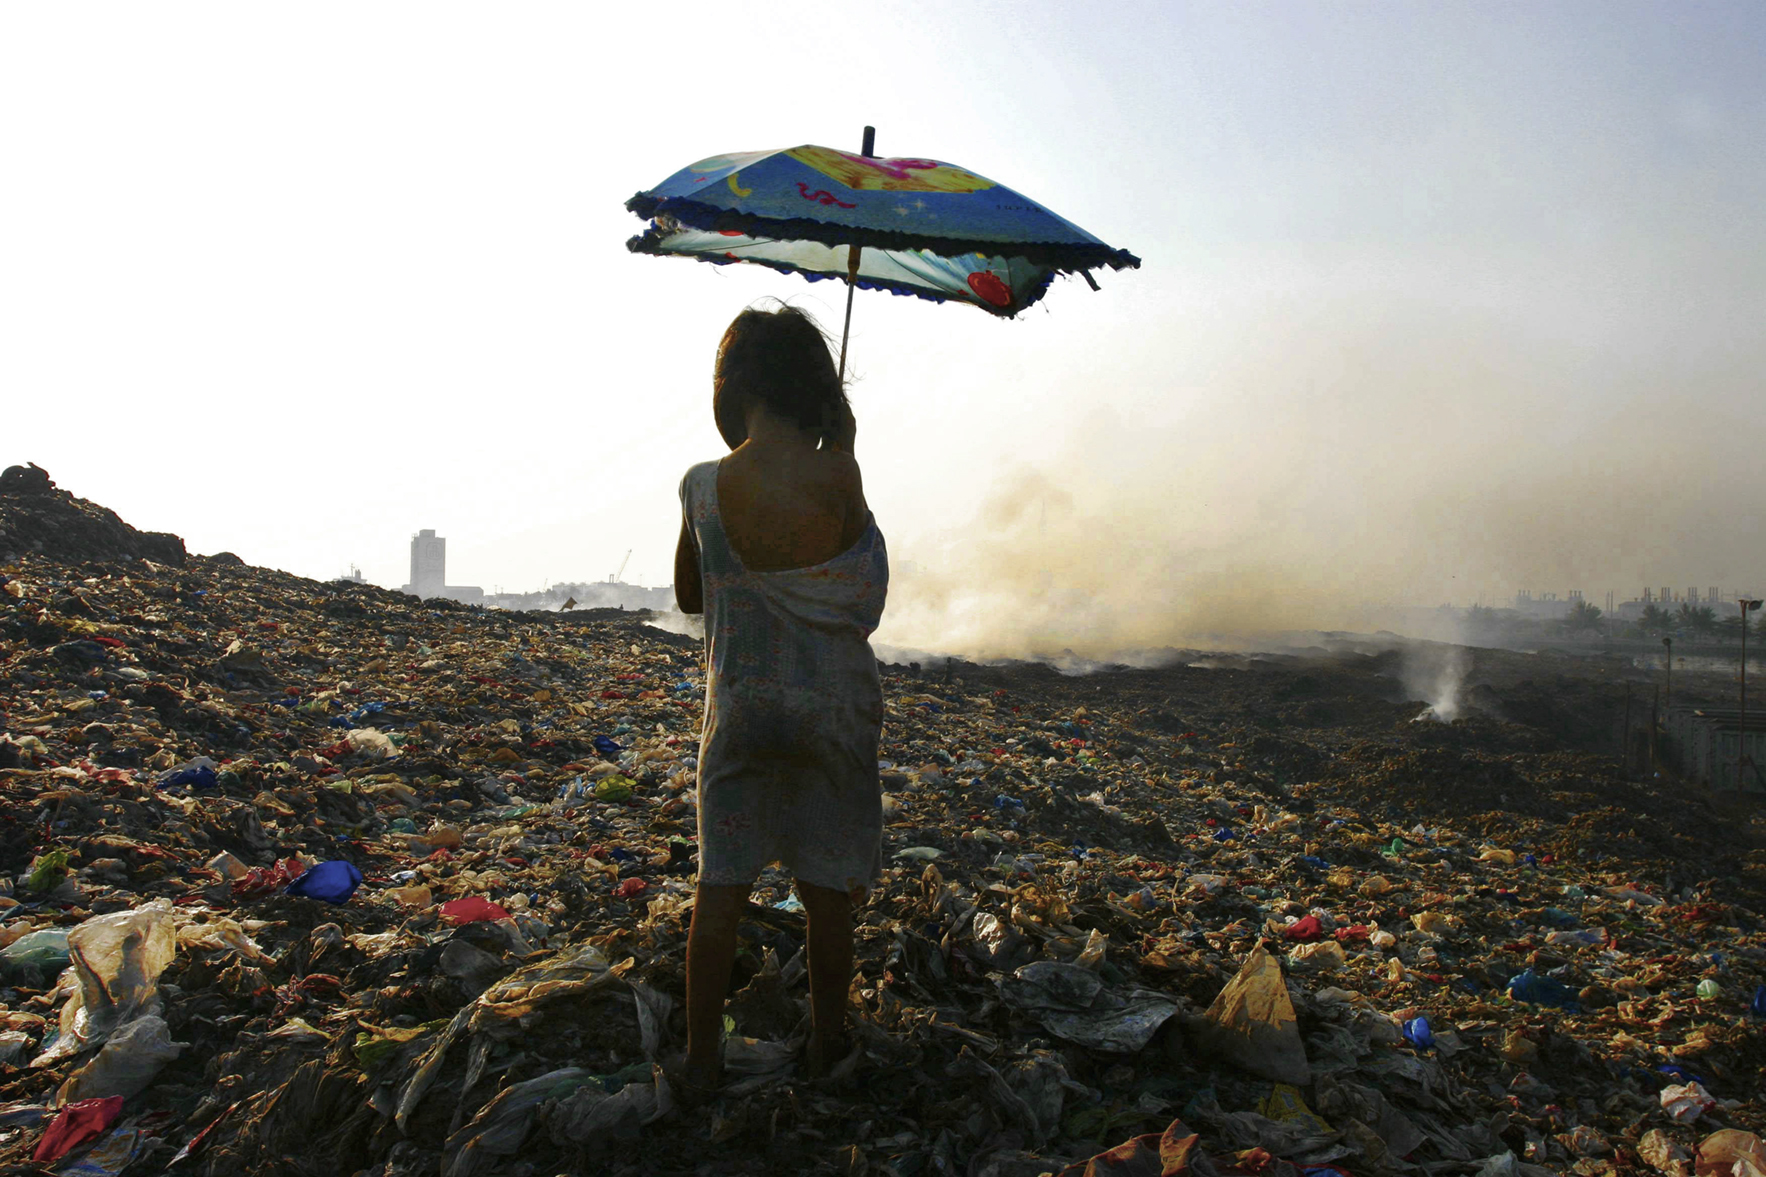  “Smoky Mountain.” Rubbish dump. Manila, 2005 